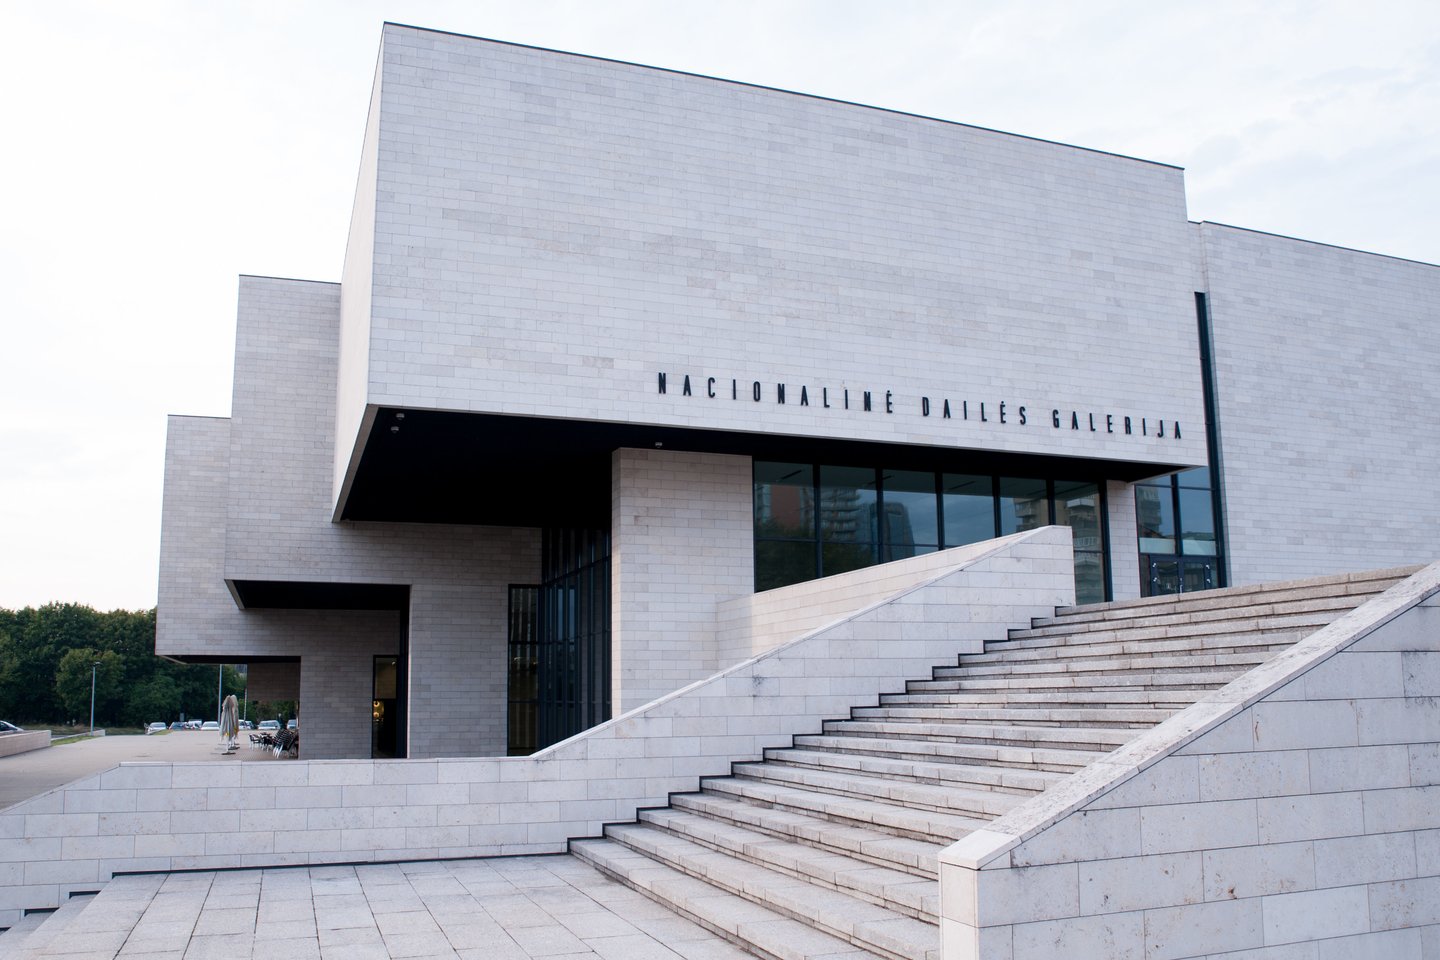 2009 m. Vilniuje atidaryta Nacionalinė dailės galerija su šiuolaikinio meno ekspozicija. Ji įsikūrė rekonstruotame vėlyvojo modernizmo statinyje, kuriame sovietmečiu veikė Revoliucijos muziejus.<br>V.Ščiavinsko nuotr.